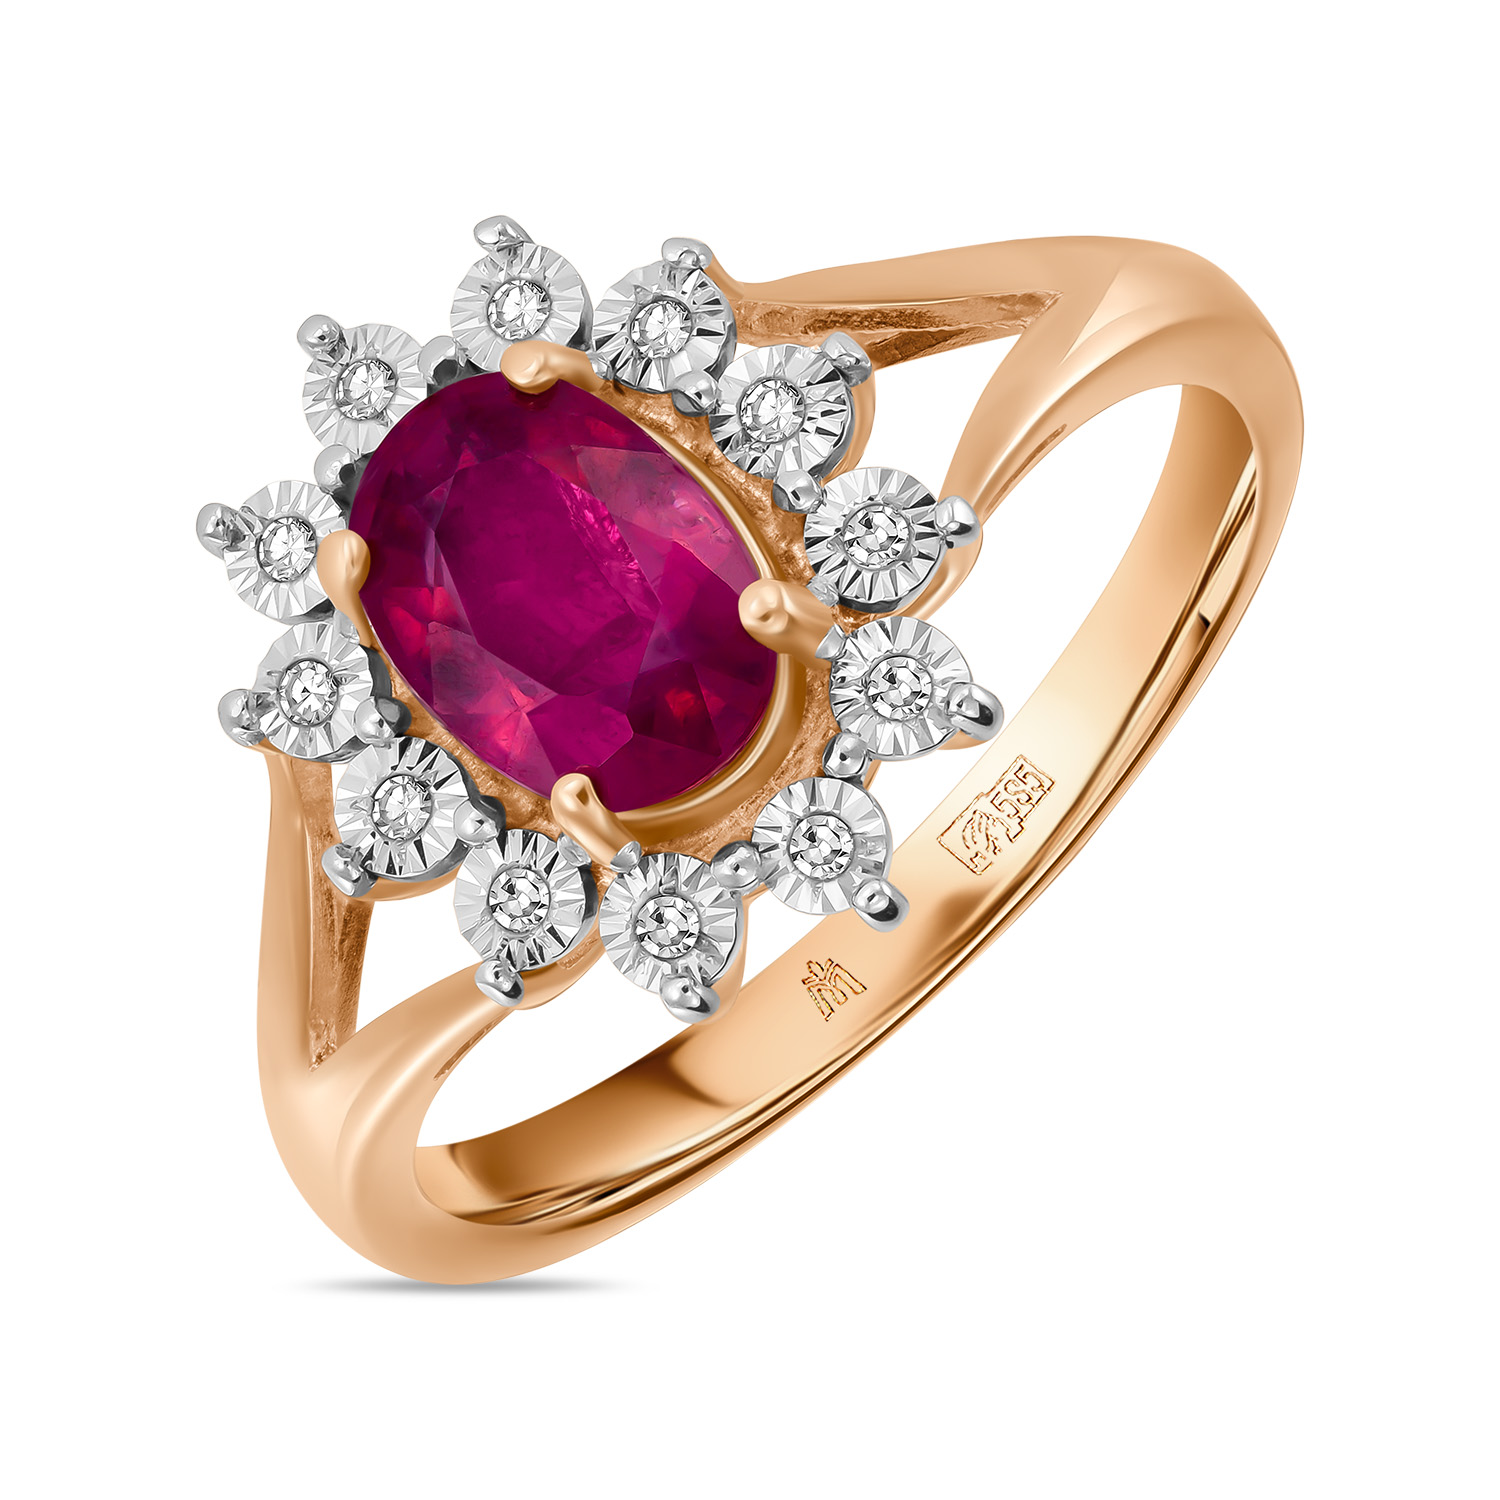 Кольца МЮЗ Кольцо с бриллиантами и облагороженным рубином кольца мюз кольцо с бриллиантами и облагороженным рубином